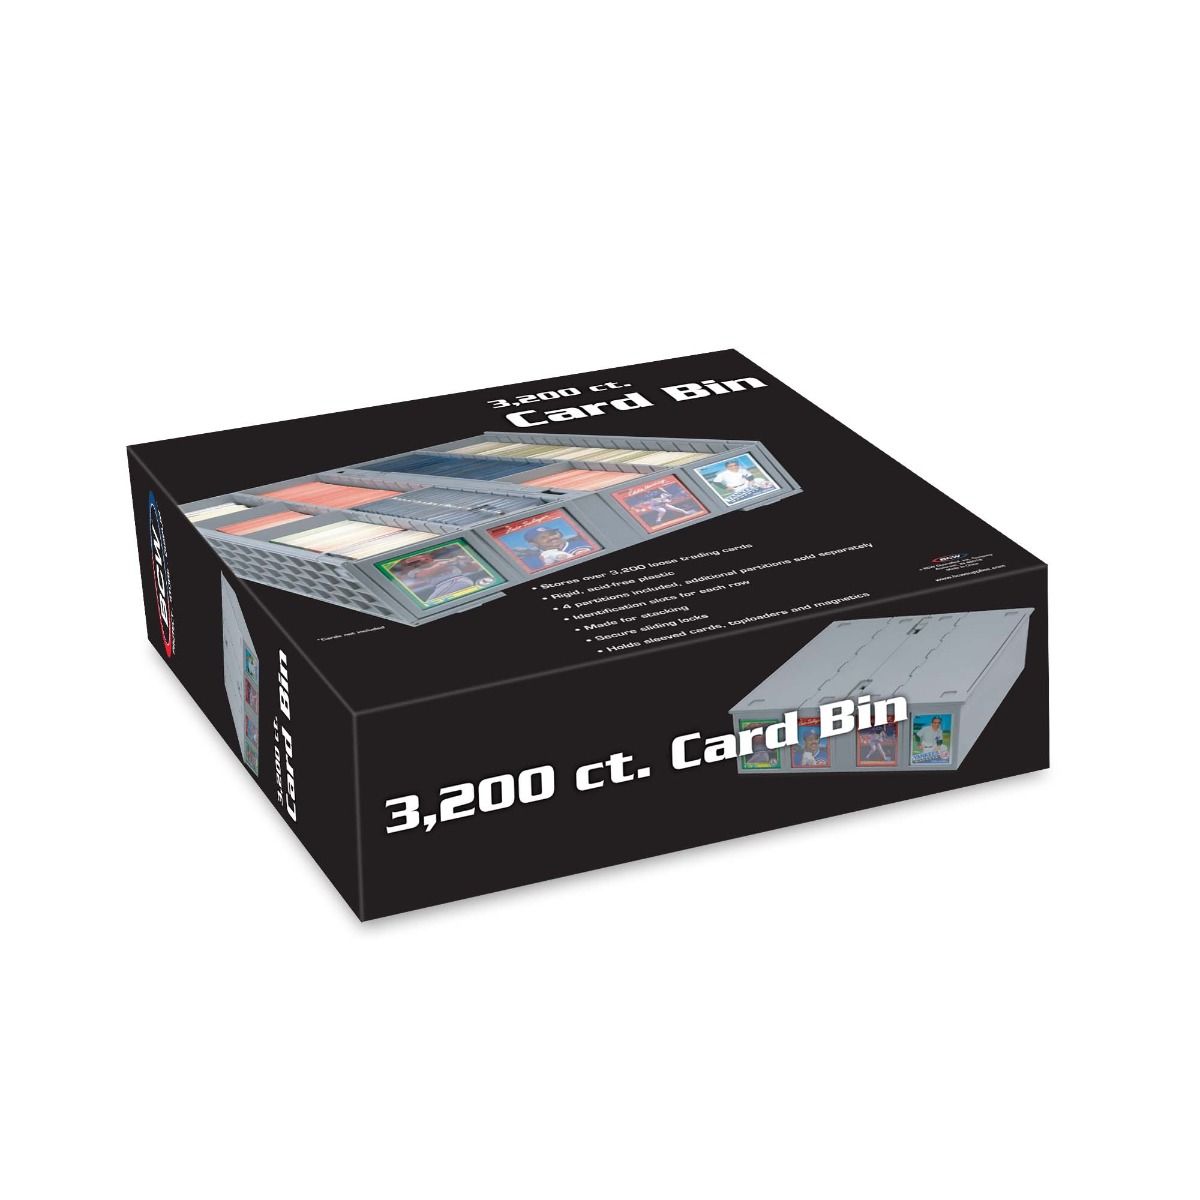 BCW Collectible Card Bin-3200-GRAY (4each/case)-BCW Supplies-Ace Cards &amp; Collectibles